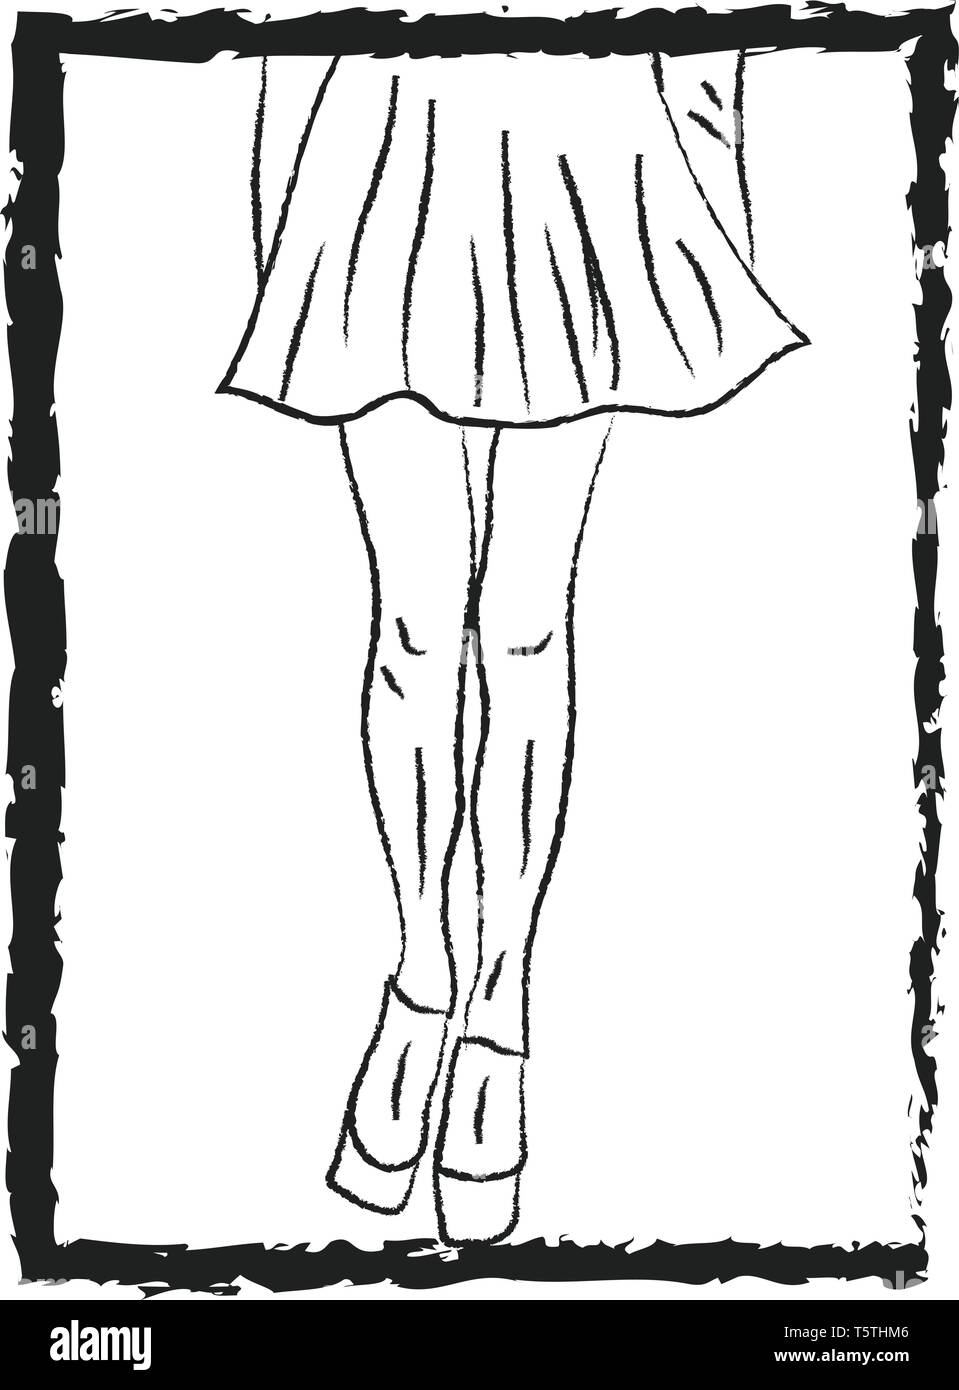 Un croquis d'une jupe courte de couleur ou de dessin vectoriel illustration  Image Vectorielle Stock - Alamy